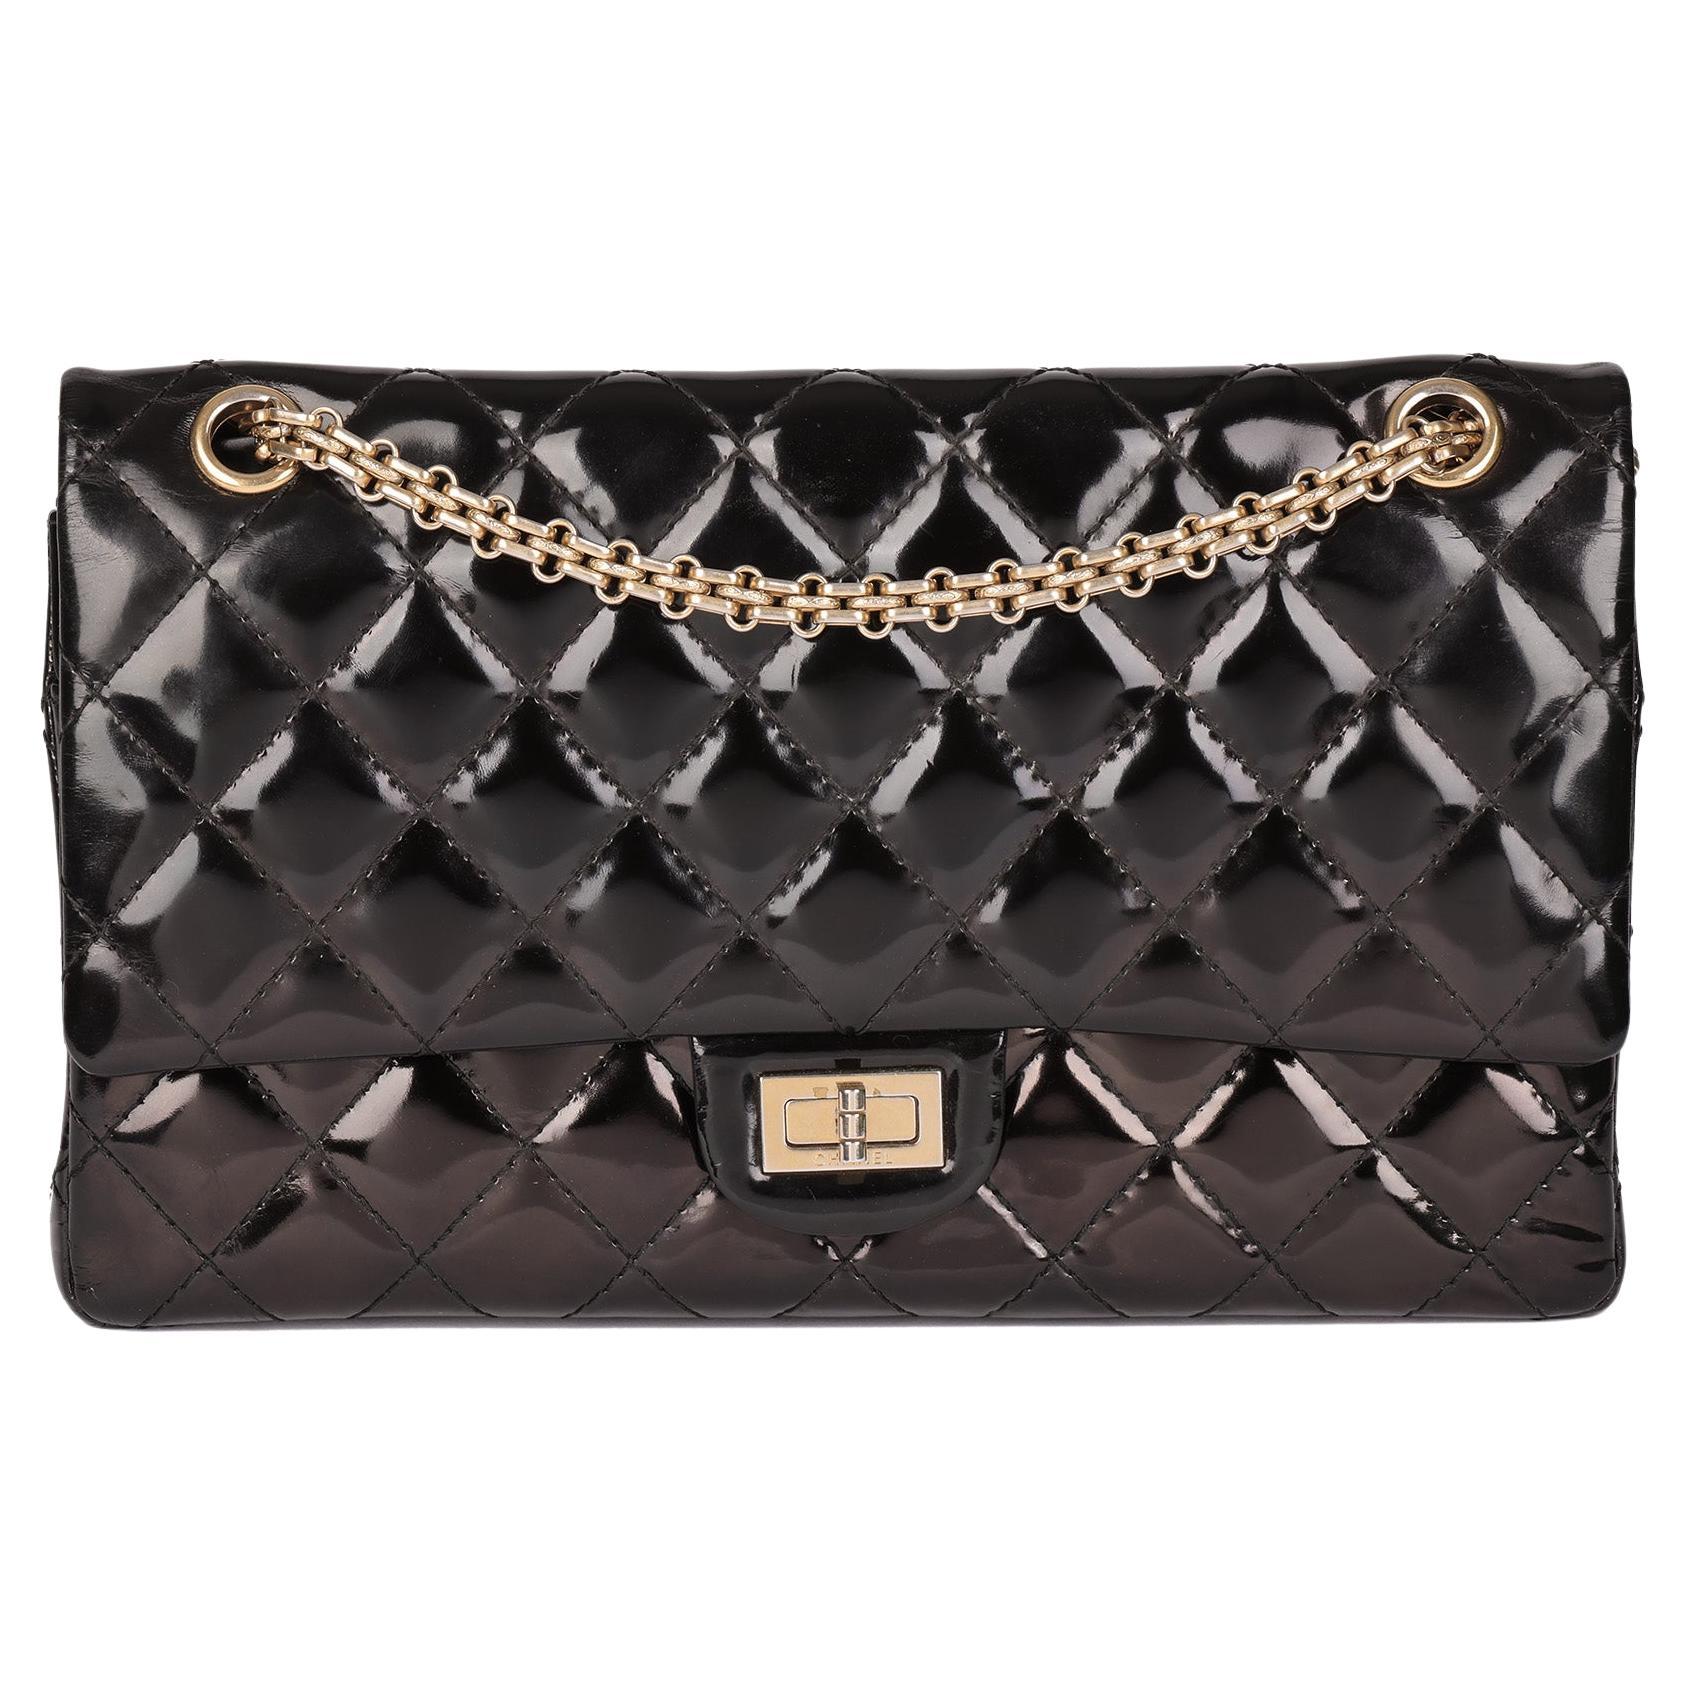 Chanel Metallic Handbag - 225 For Sale on 1stDibs